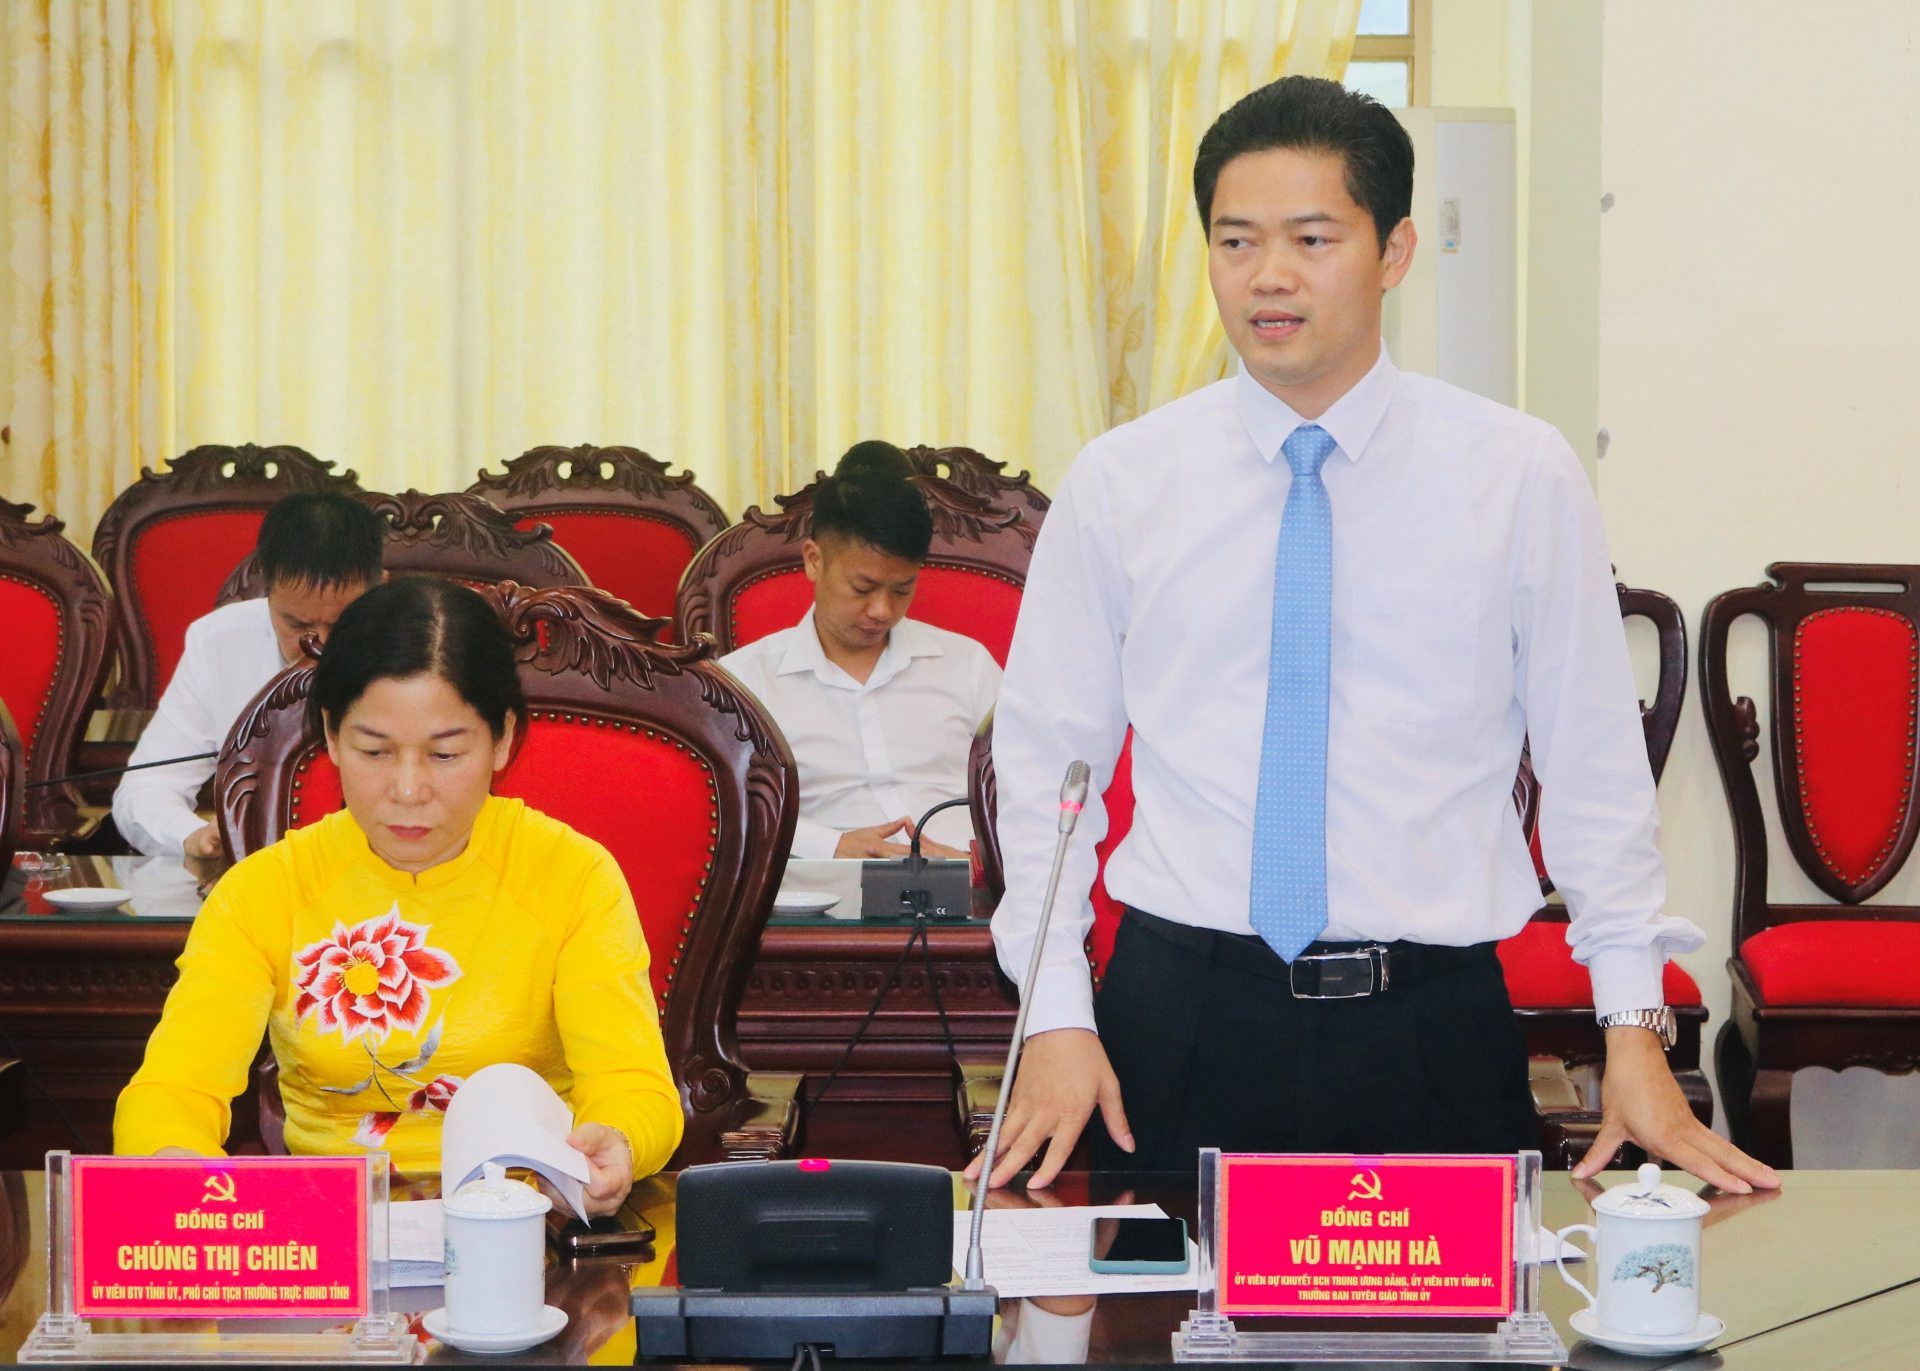 Đồng chí Vũ Mạnh Hà, Trưởng ban Tuyên giáo Tỉnh ủy phát biểu tại lễ ký kết